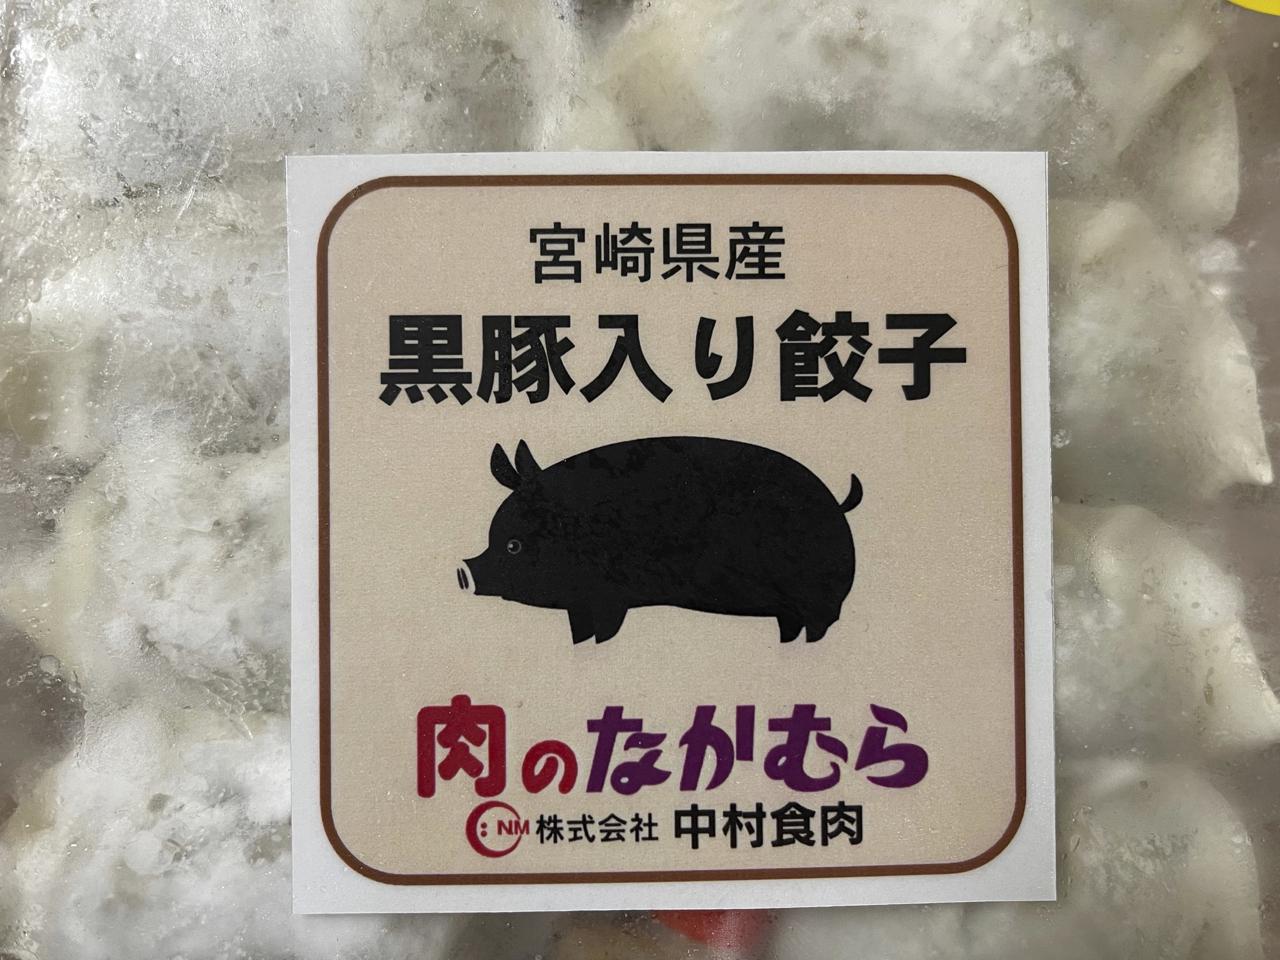 宮崎餃子購入額日本一【肉のなかむら黒豚入り餃子】を食べました